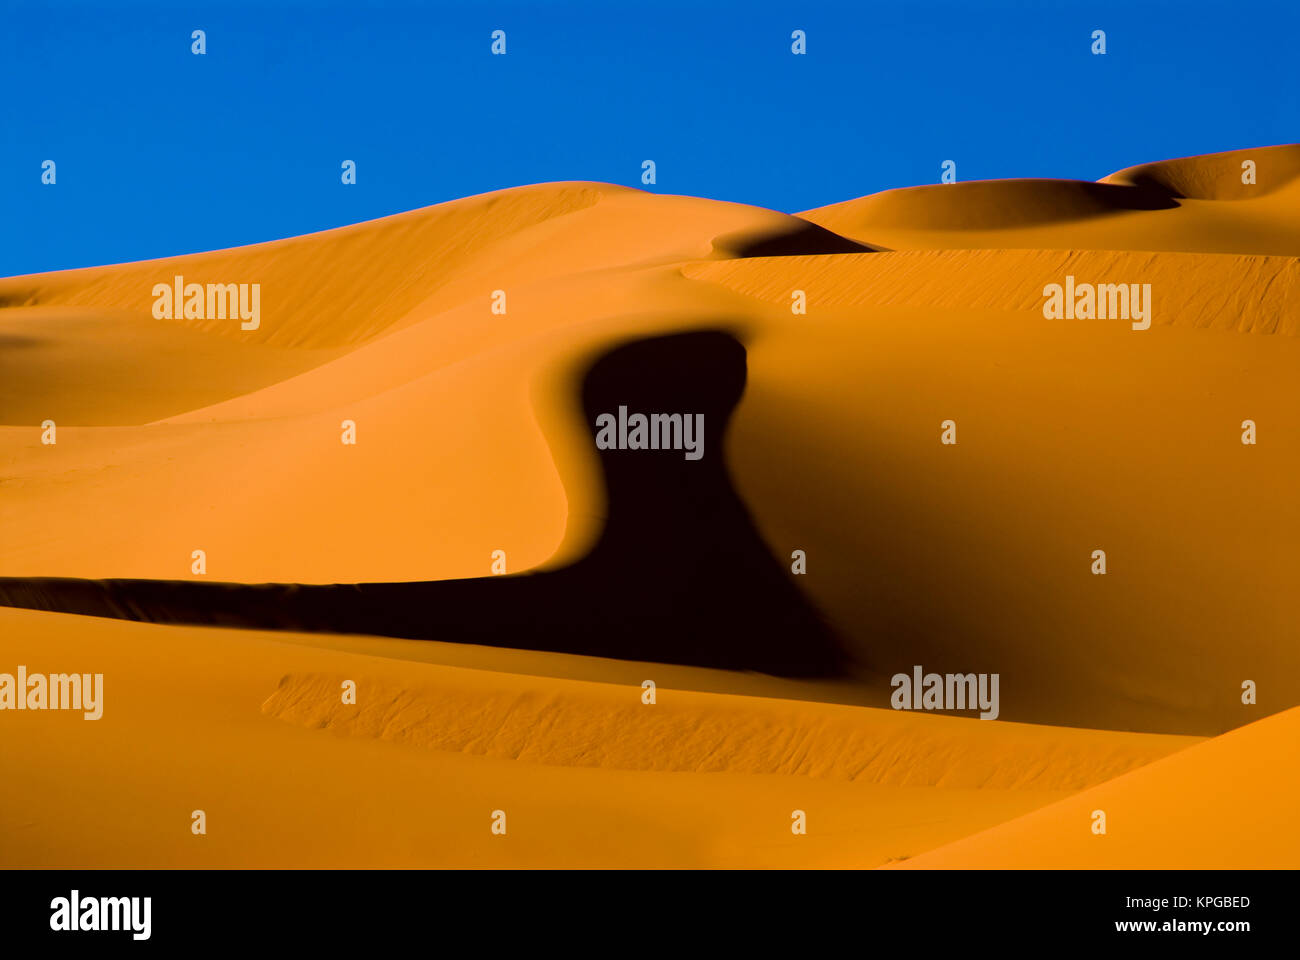 Libya, Fezzan, dunes of the Erg Murzuq Stock Photo